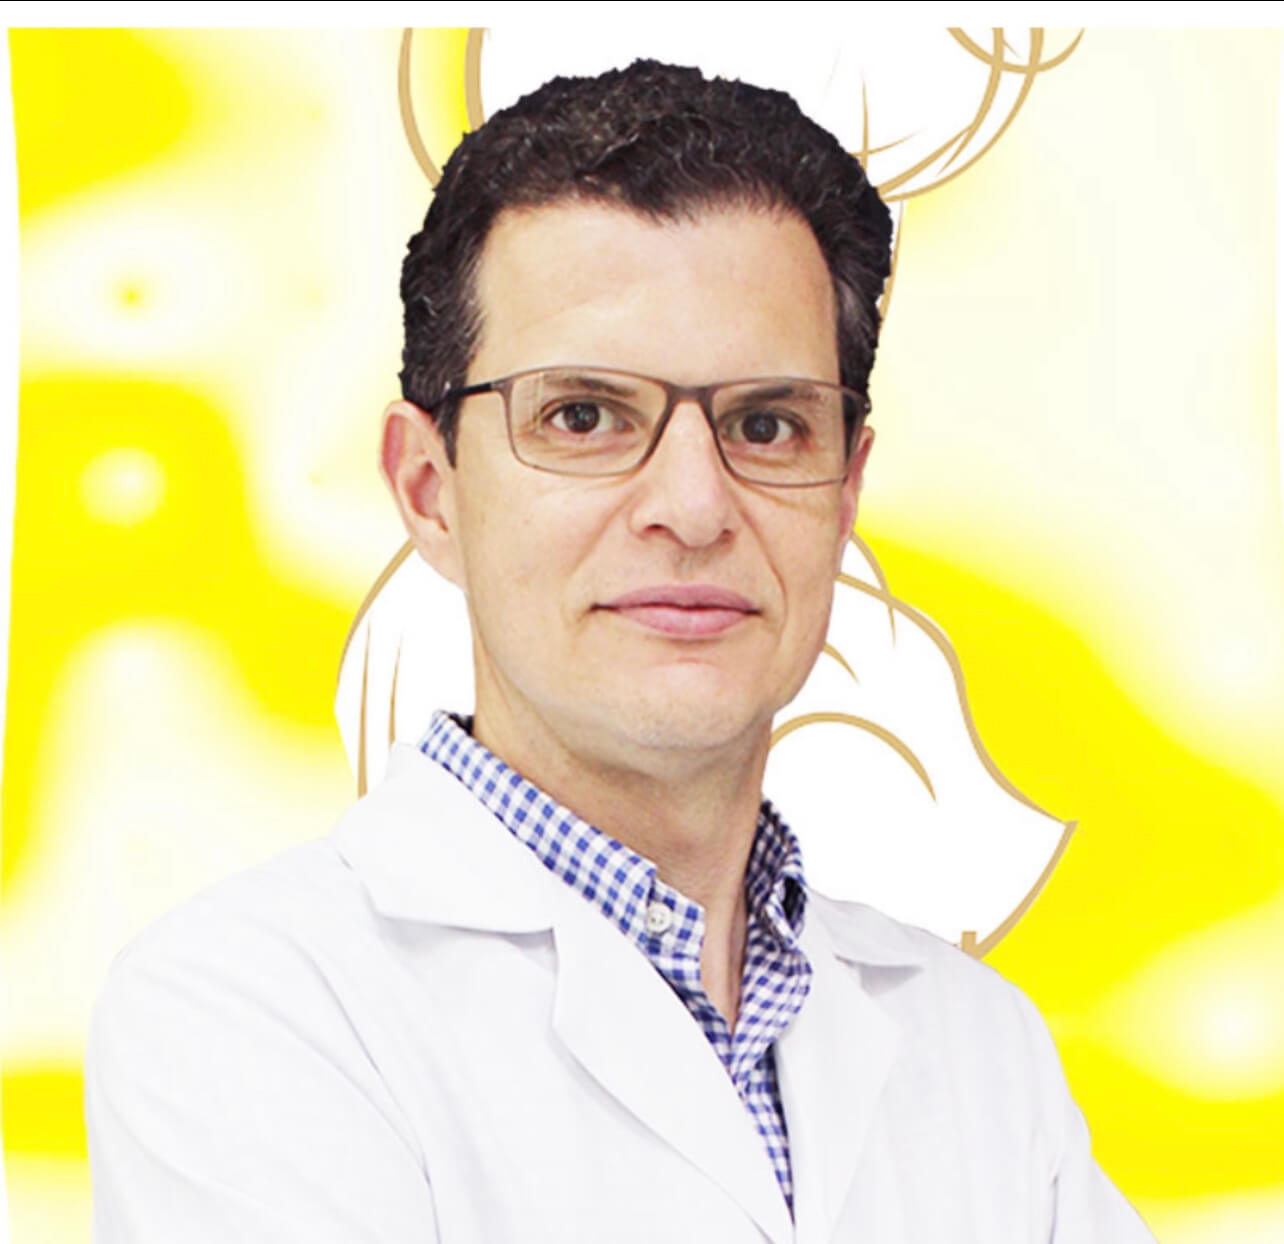 DR. RICARDO ALVES